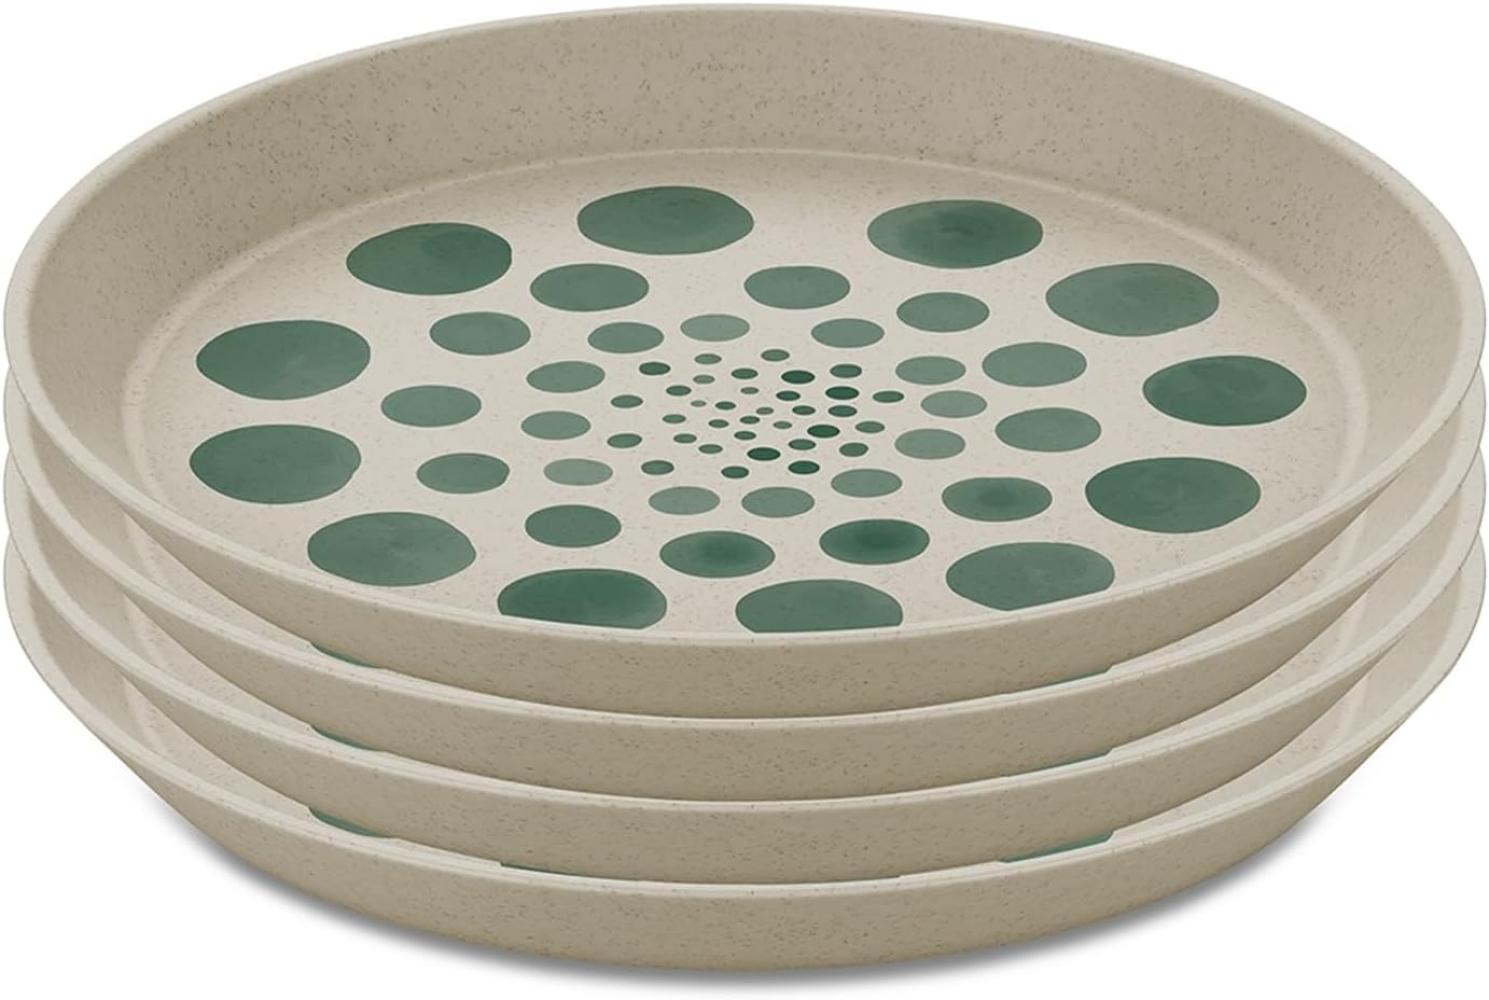 Koziol Teller-Set Connect Plate Monstera Dots 4-tlg, Kuchenteller, Kunststoff, Nature Desert Sand, 20. 5 cm, 1453700 Bild 1